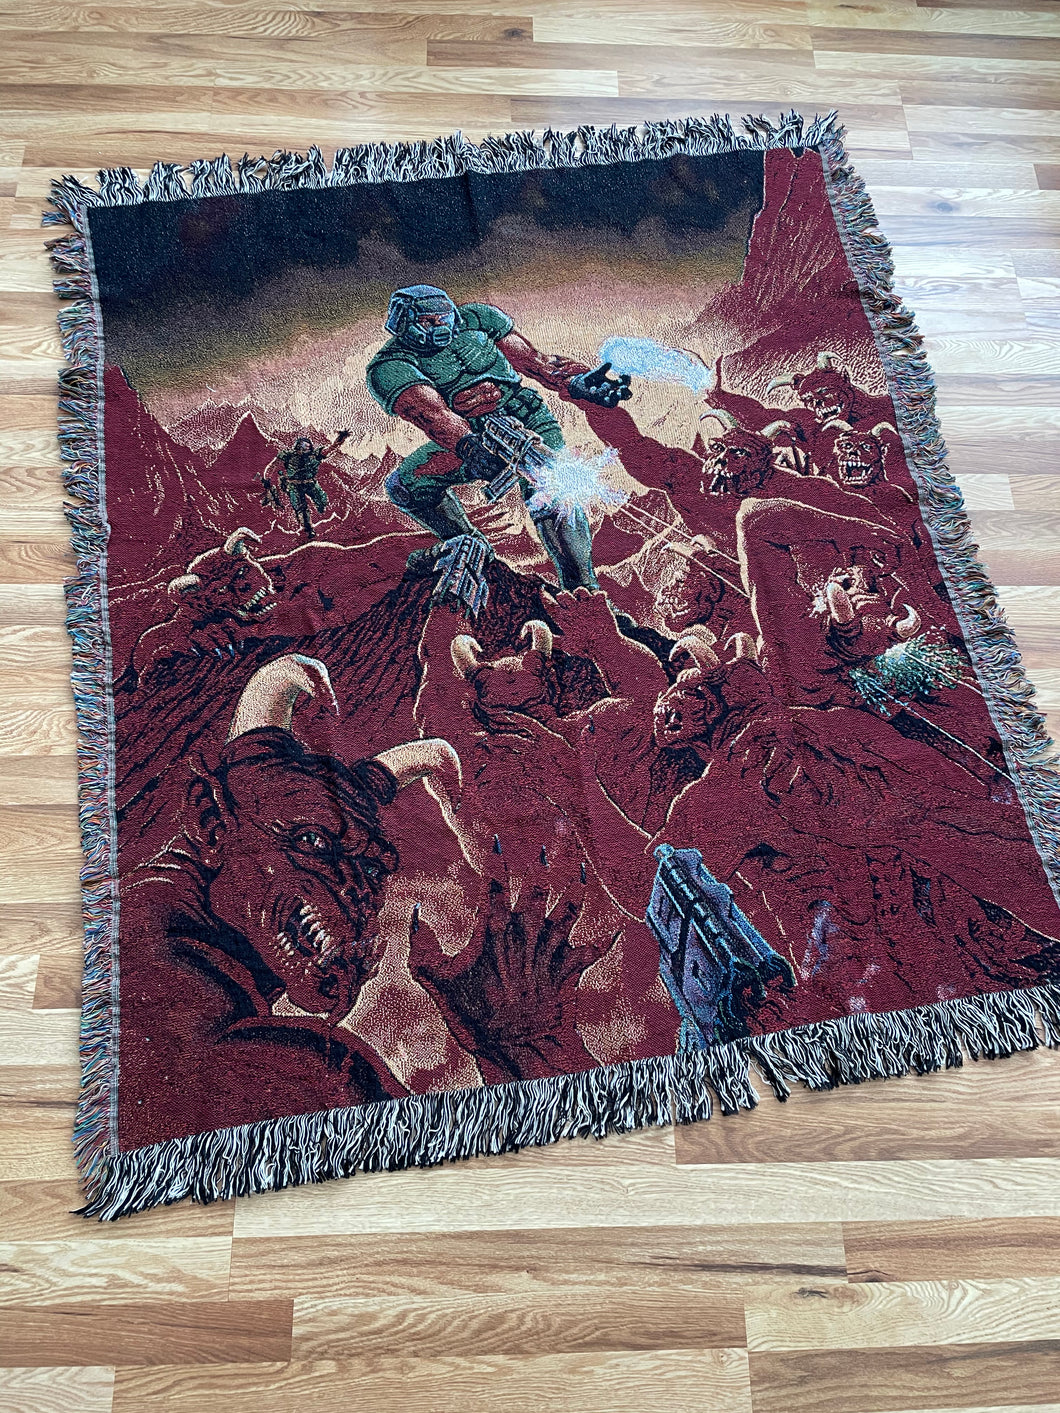 Doom woven blanket / tapestry